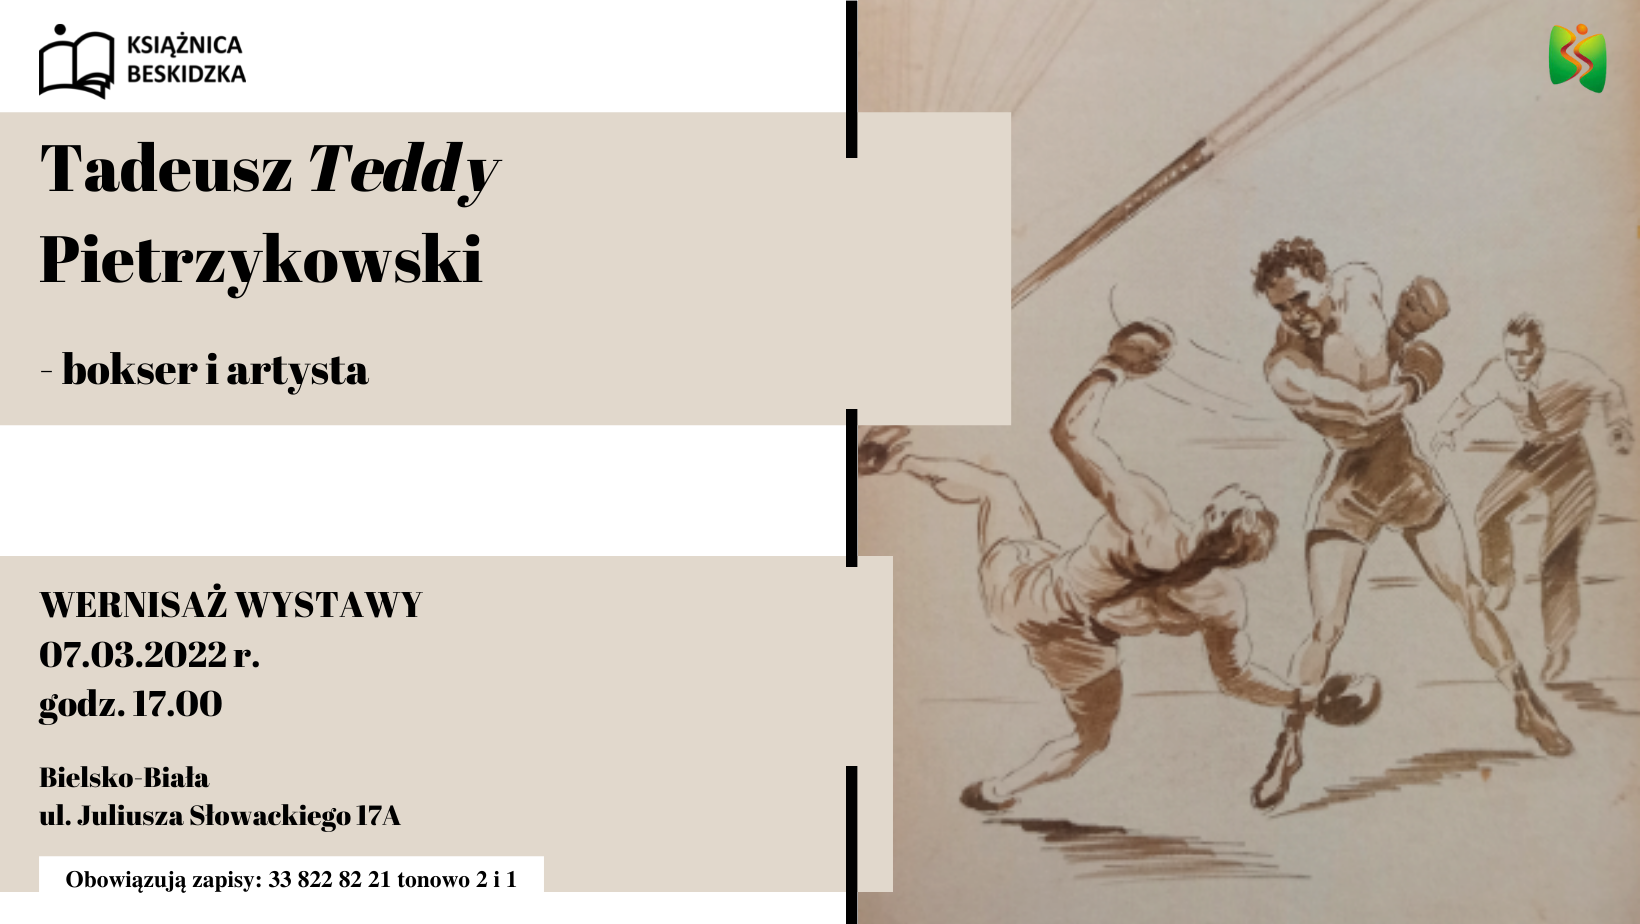 Wernisaż wystawy Tadeusz Teddy Pietrzykowski – bokser i artysta